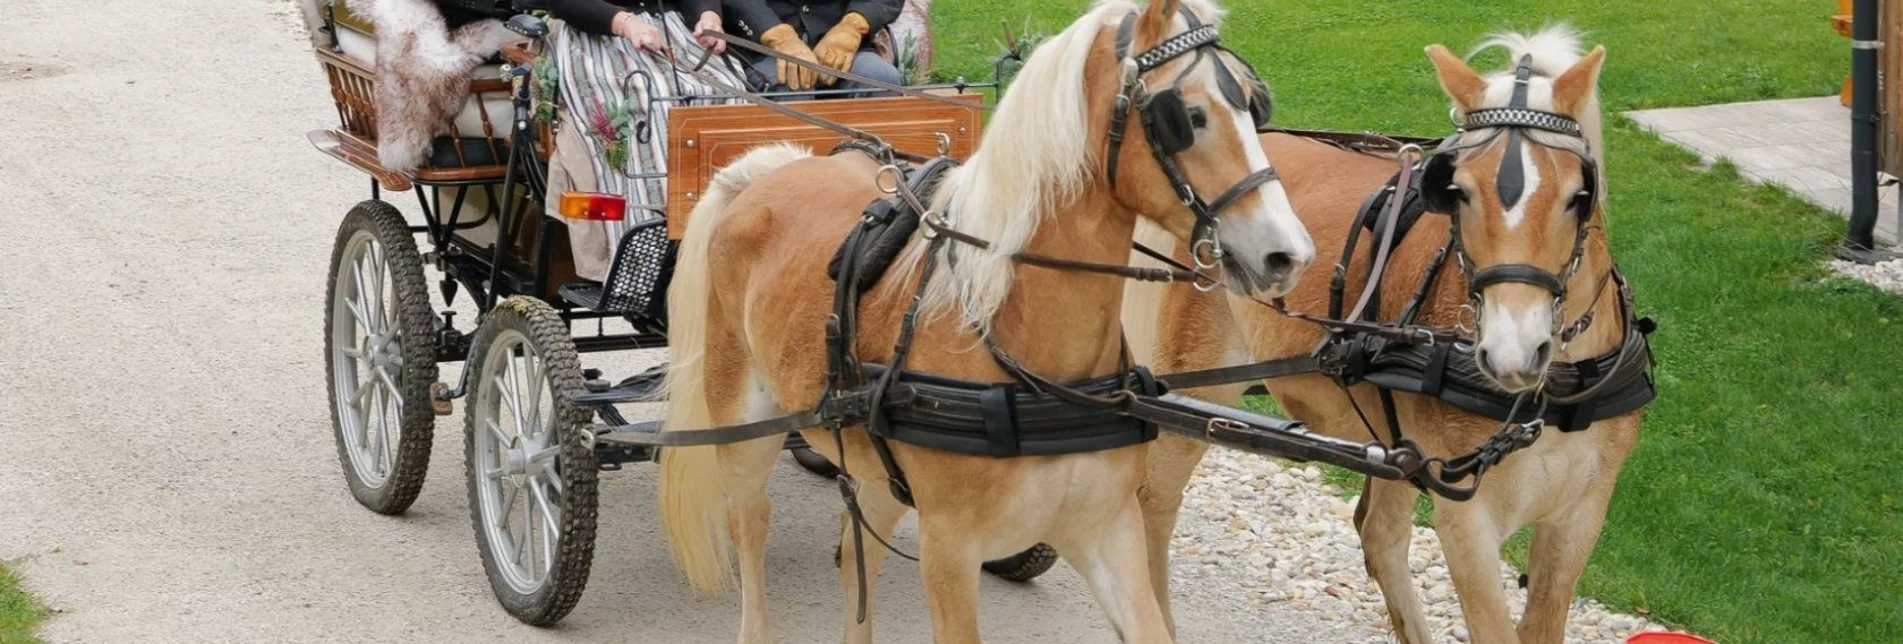 Horse Carriage Ride 4D Arch Cinema Zloam - Touren-Impression #1 | © Tourismusverband Ausseerland